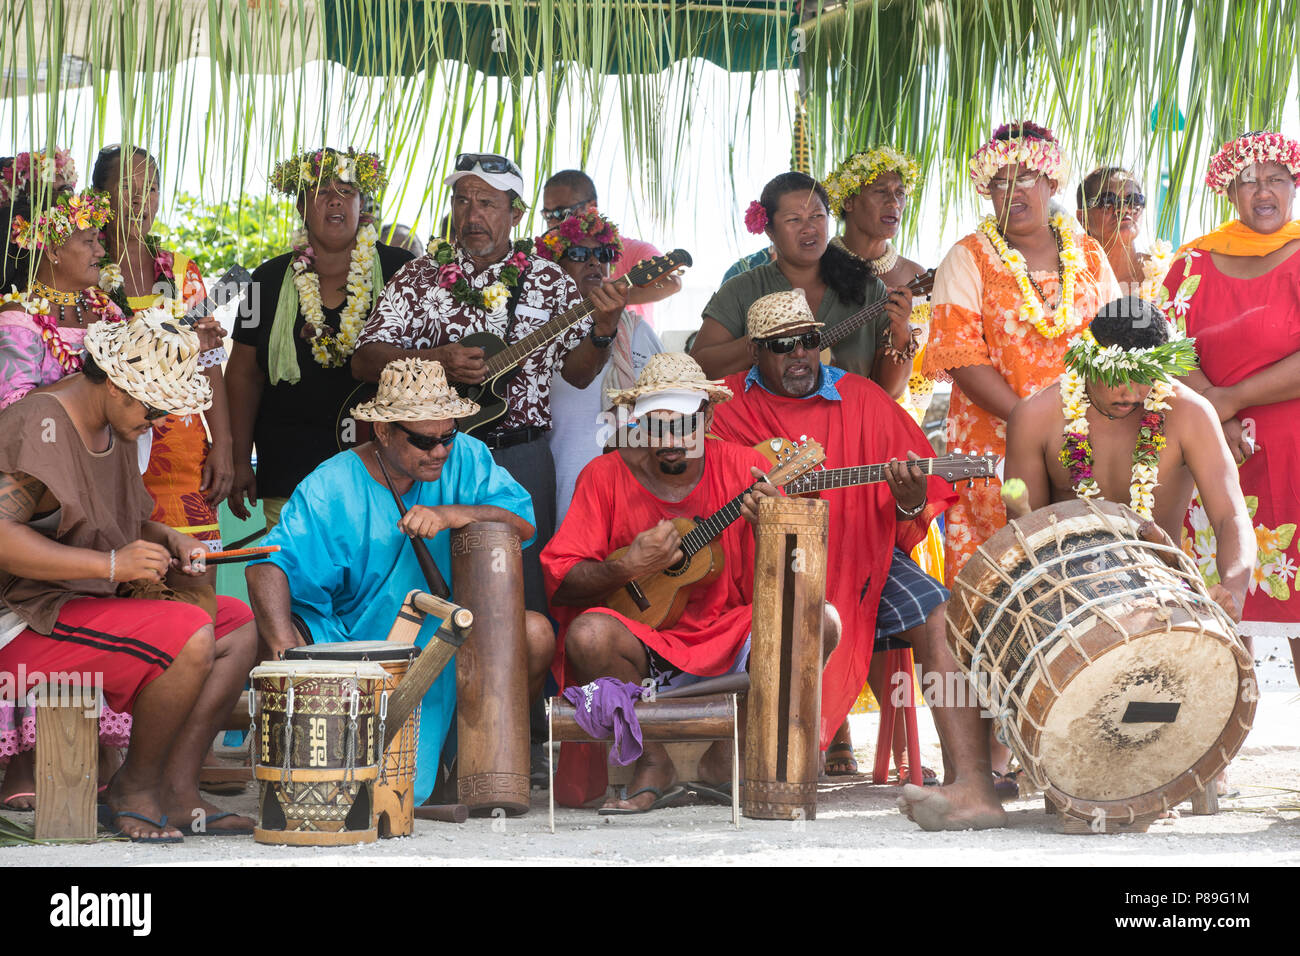 Banda de turistas y lugareños realizar en Manihi Isla Foto de stock